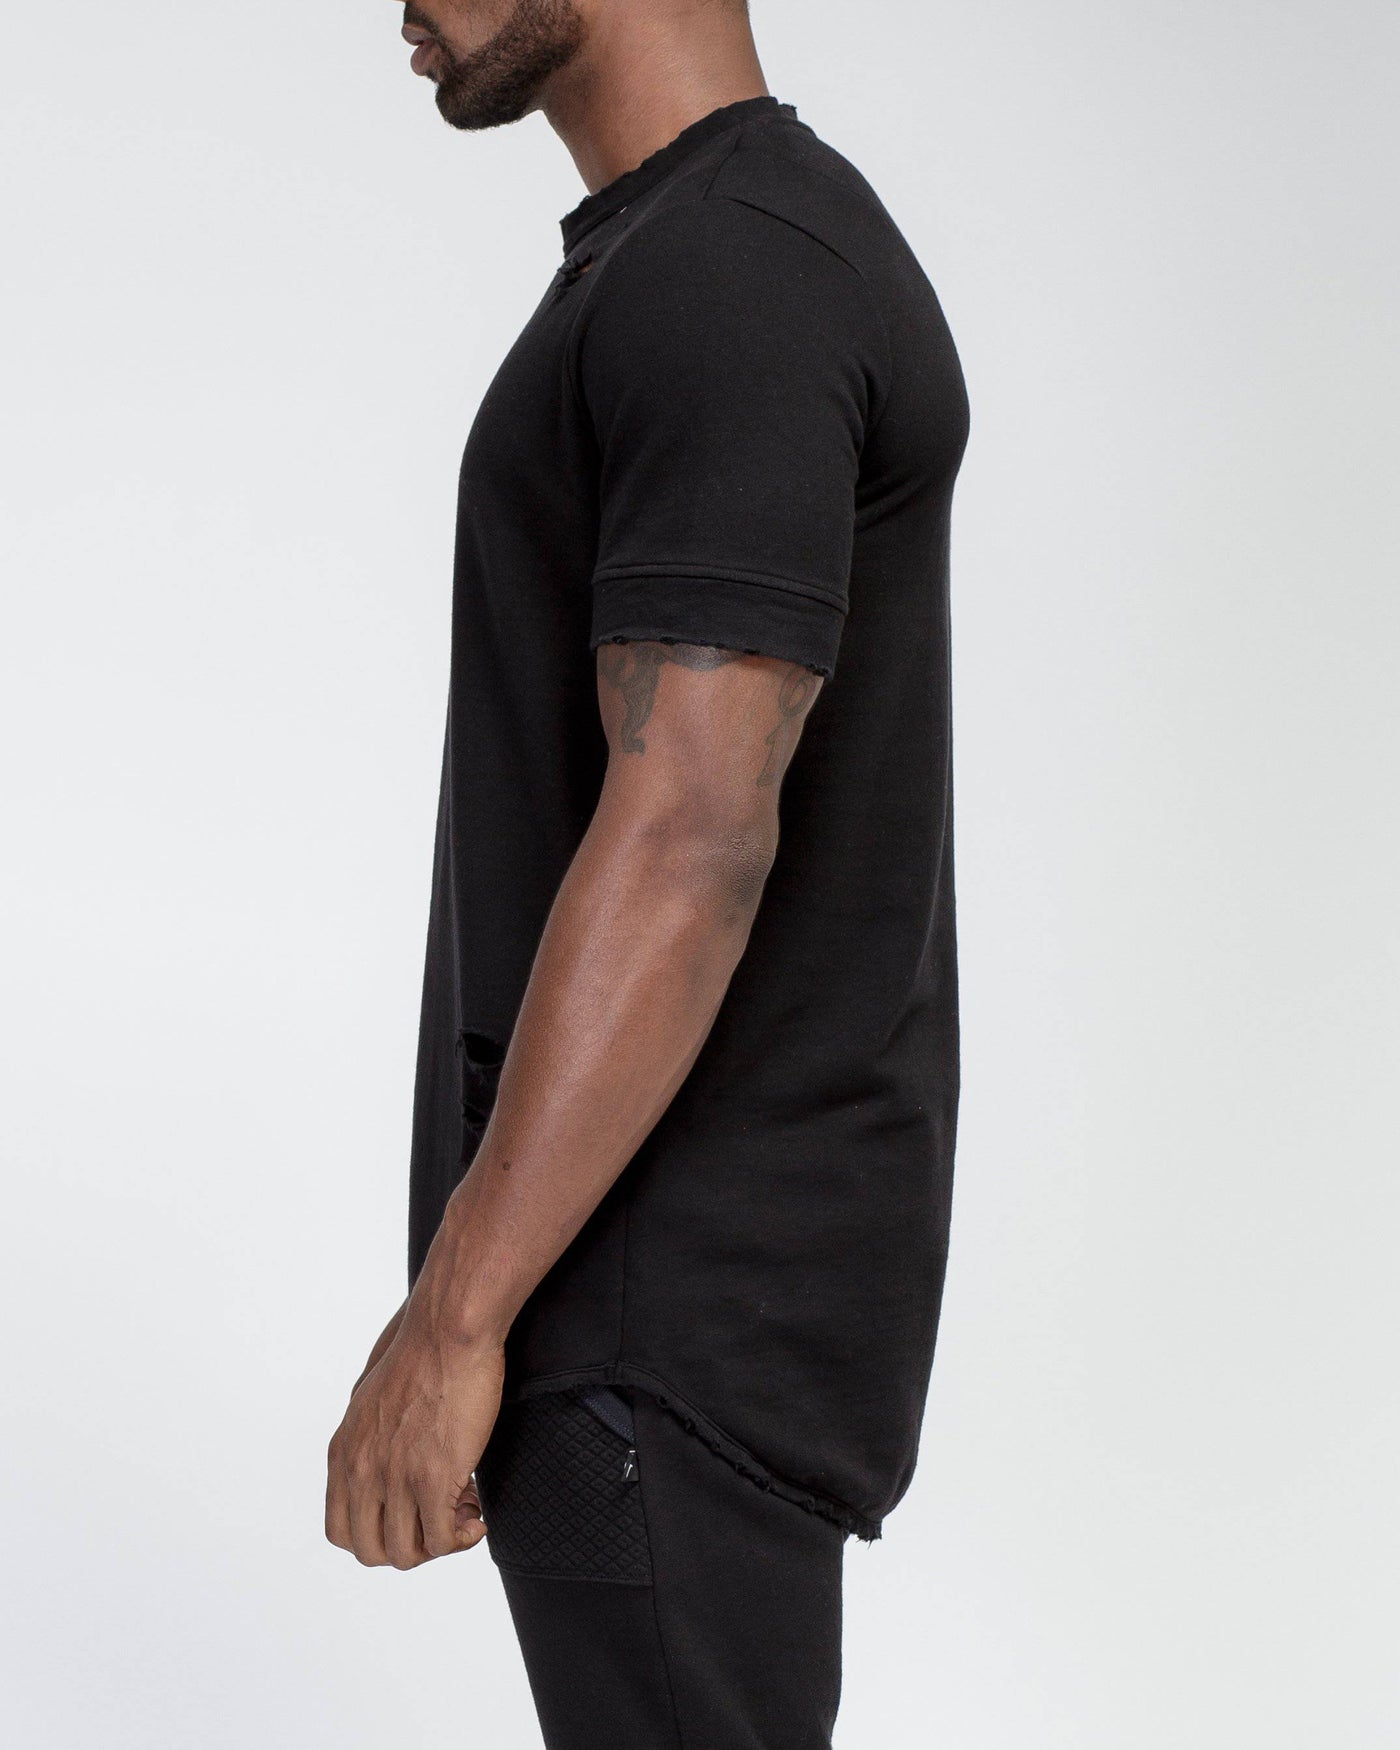 Konus Men's French Terry Short Sleeve Tee w/ Grinding in Black by Shop at Konus